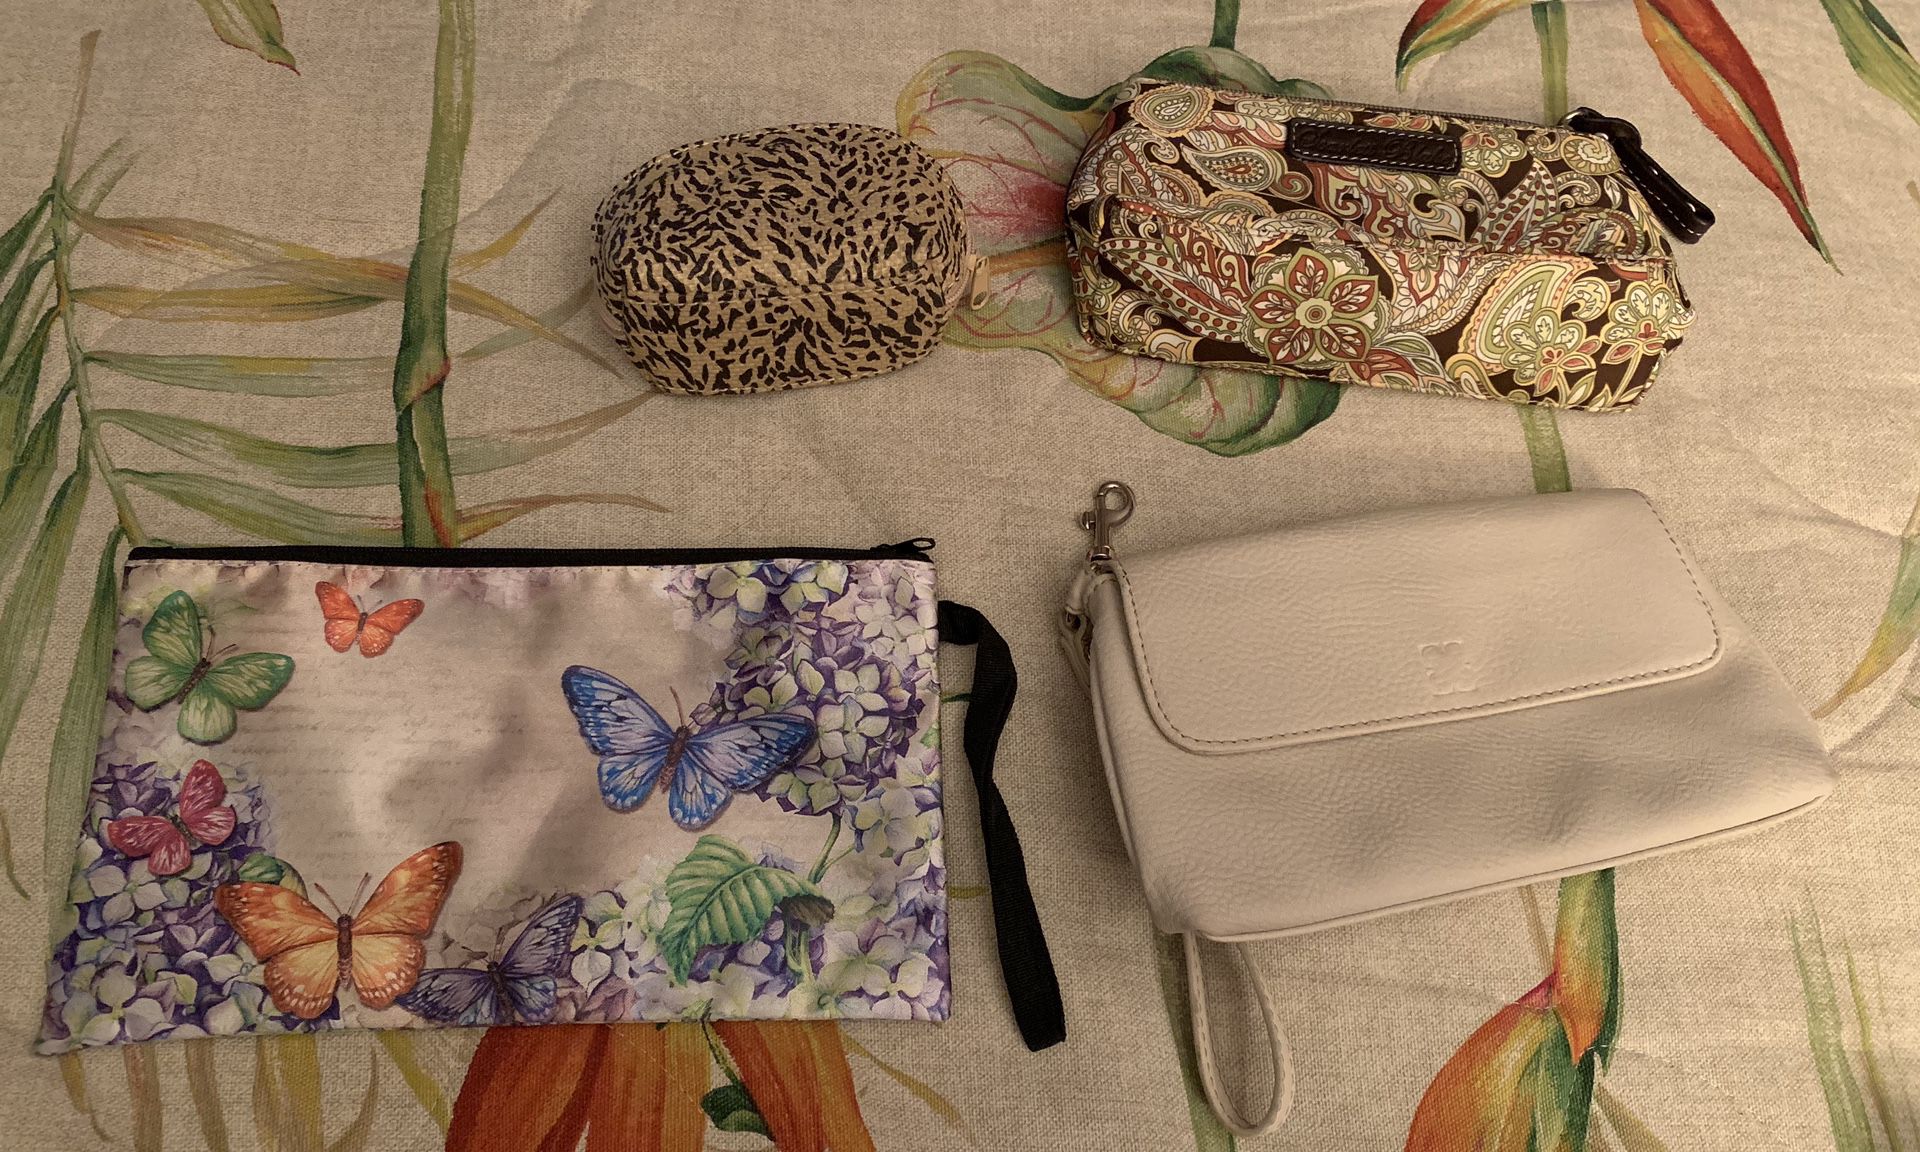 Small wallets and makeup bag